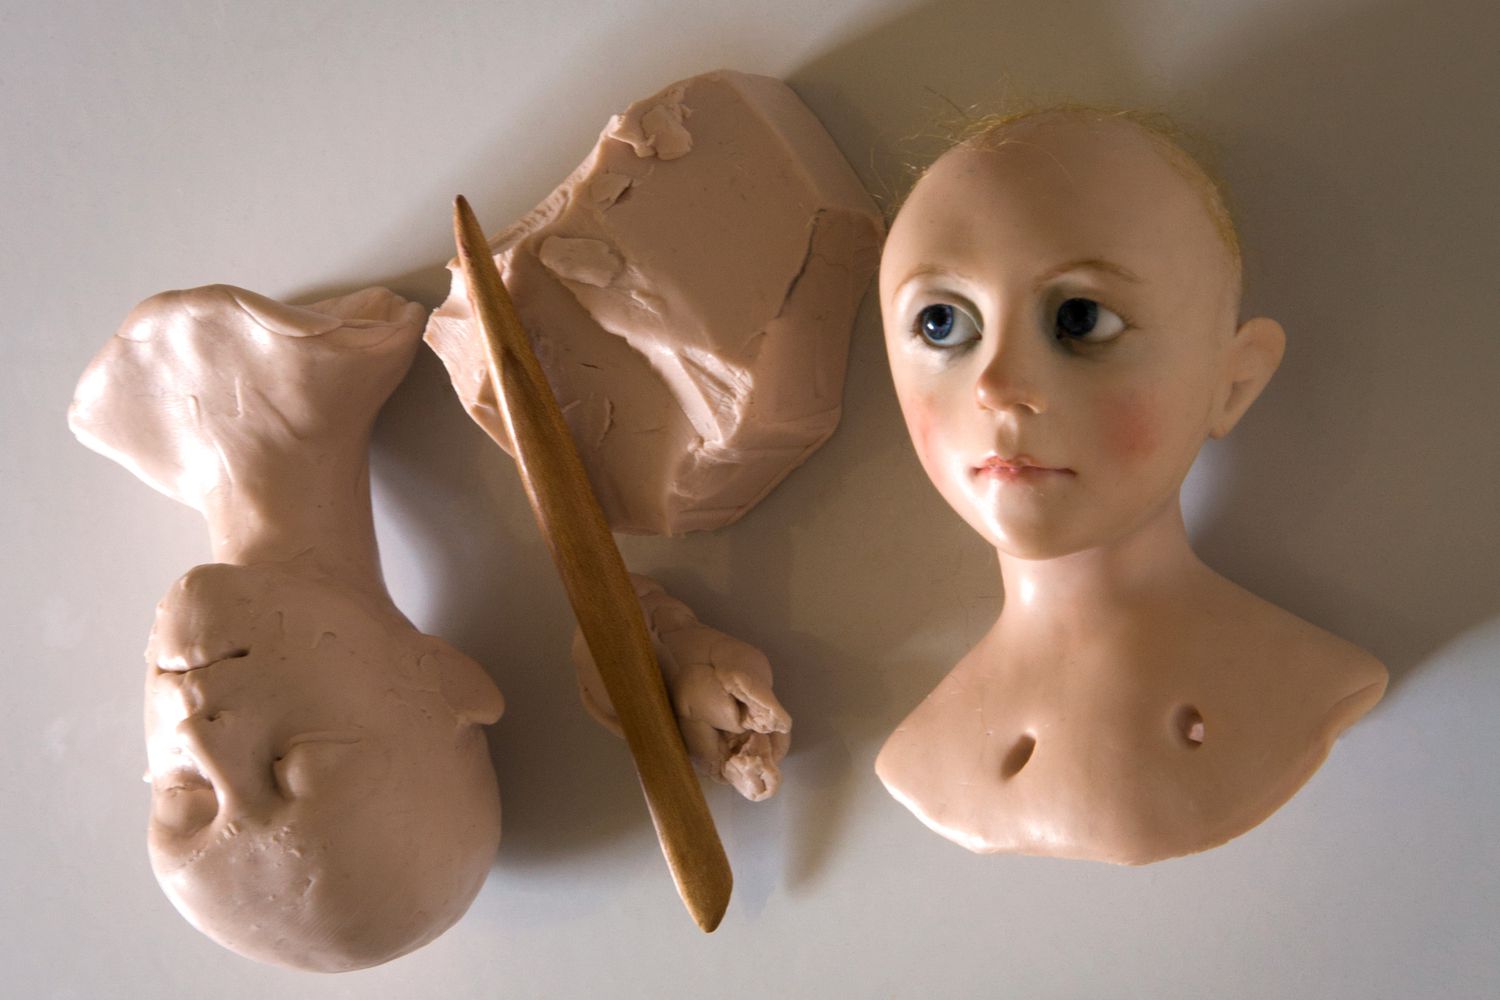 娃娃的头被雕刻出粘土